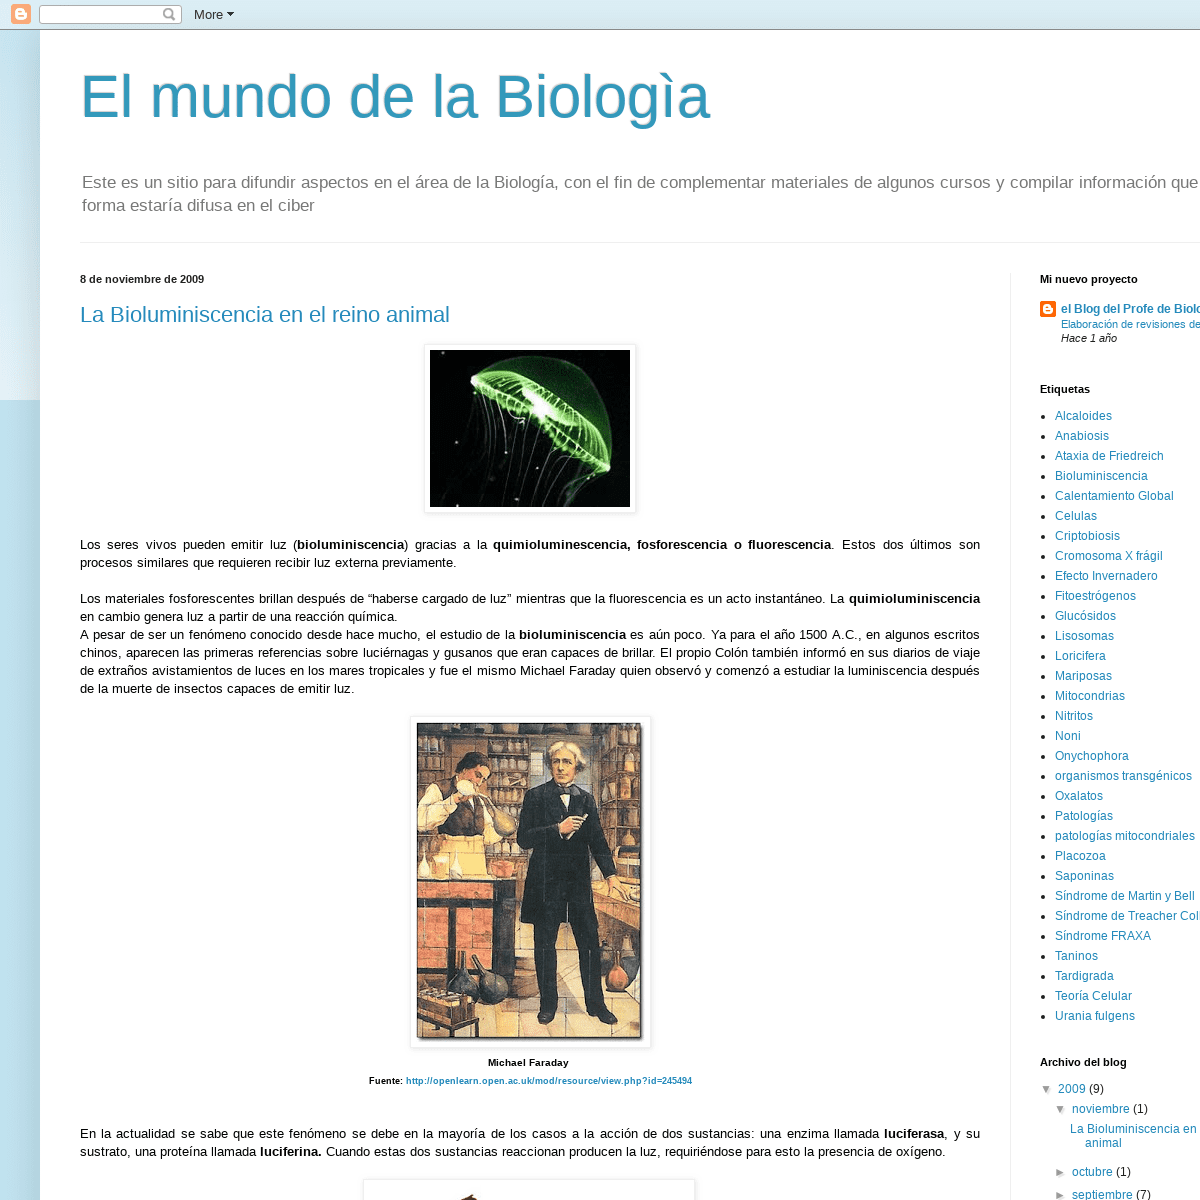 El mundo de la Biologìa